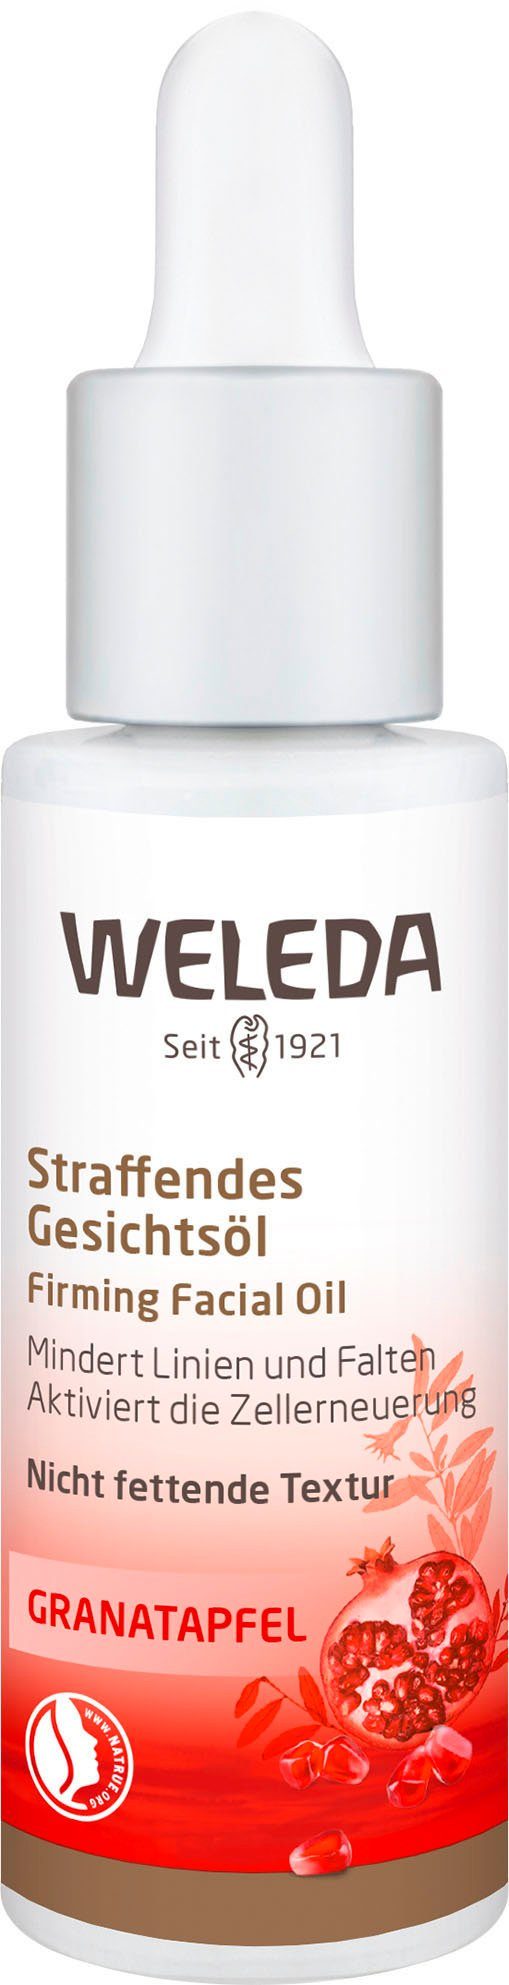 WELEDA Gesichtsöl Granatapfel online kaufen | OTTO